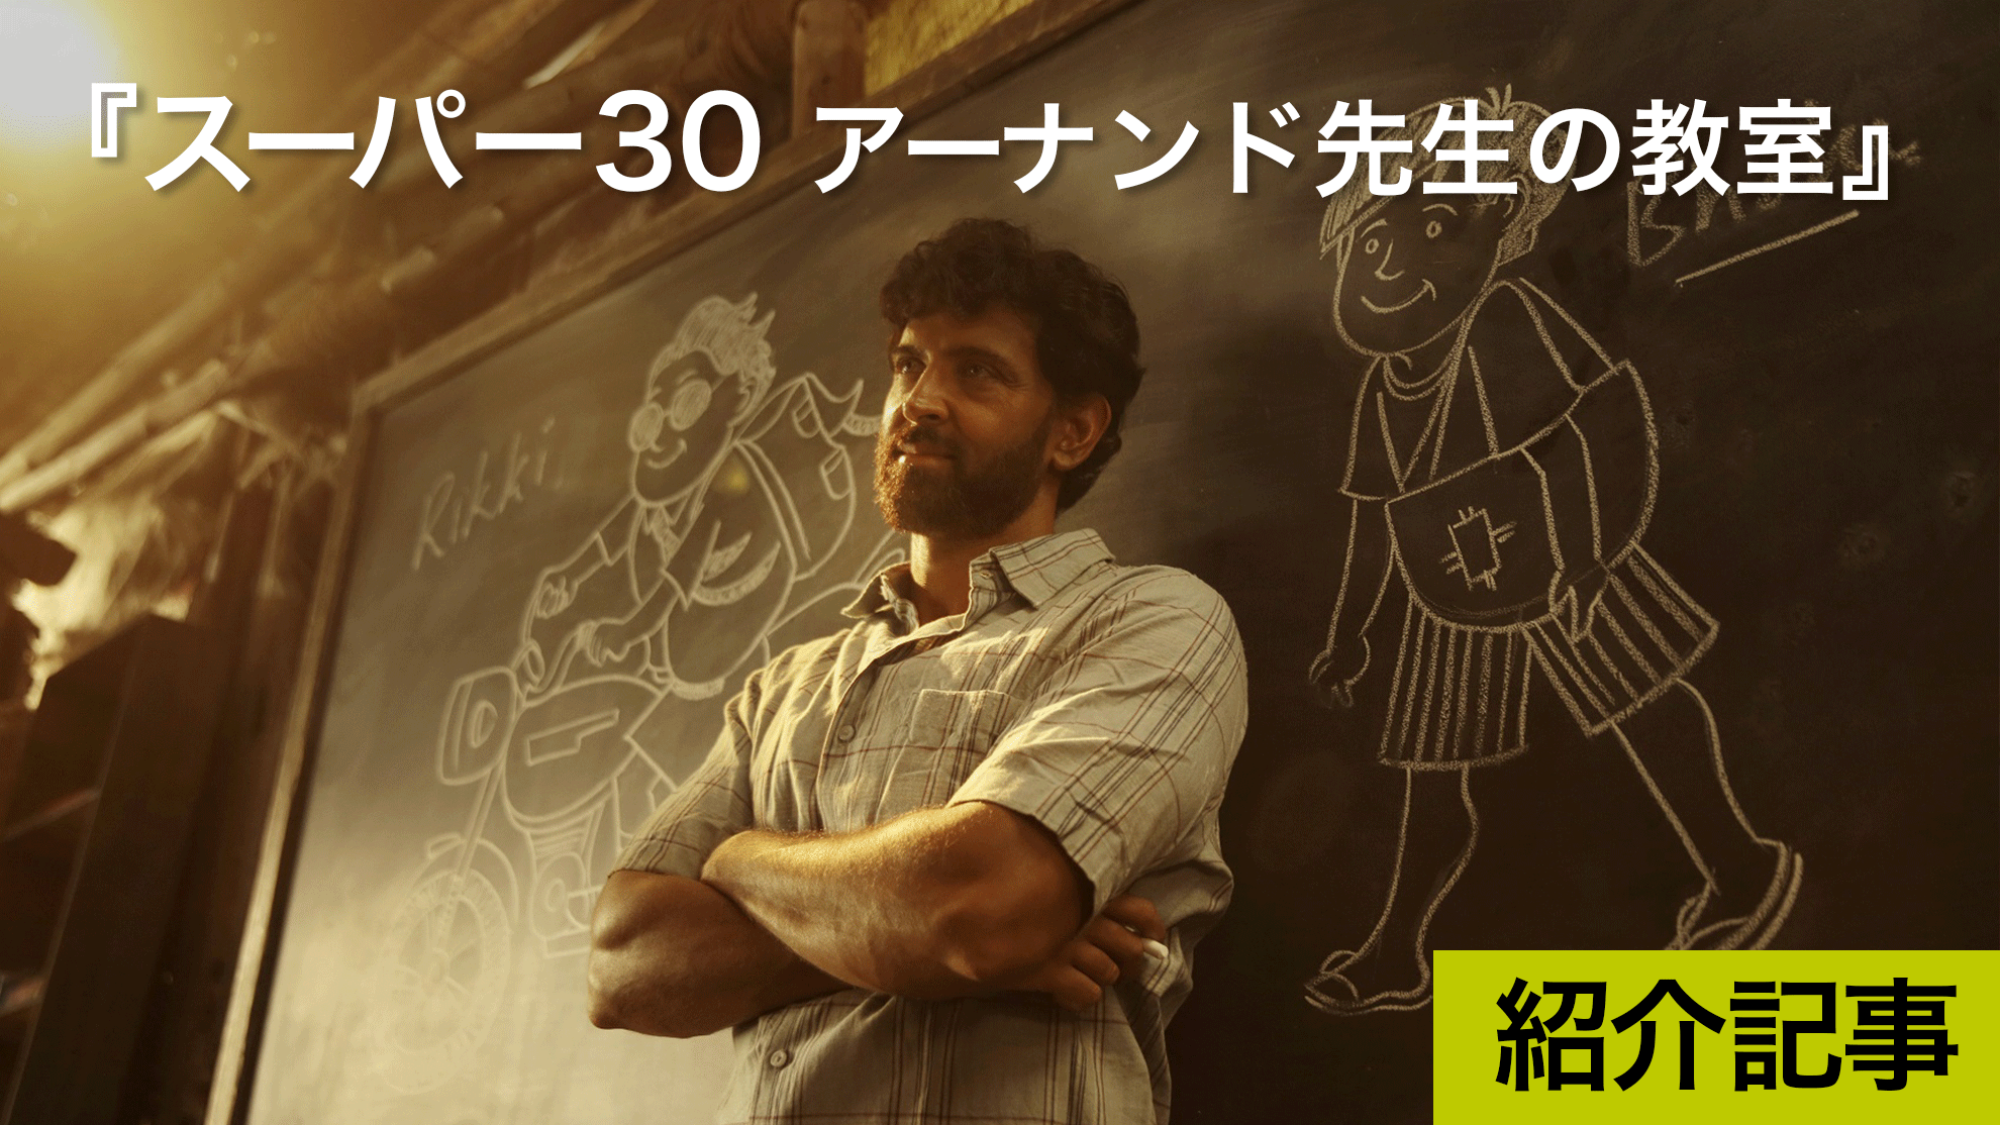 『スーパー30 アーナンド先生の教室』実話をもとに作られた映画「知」と「英語」を身につけろ